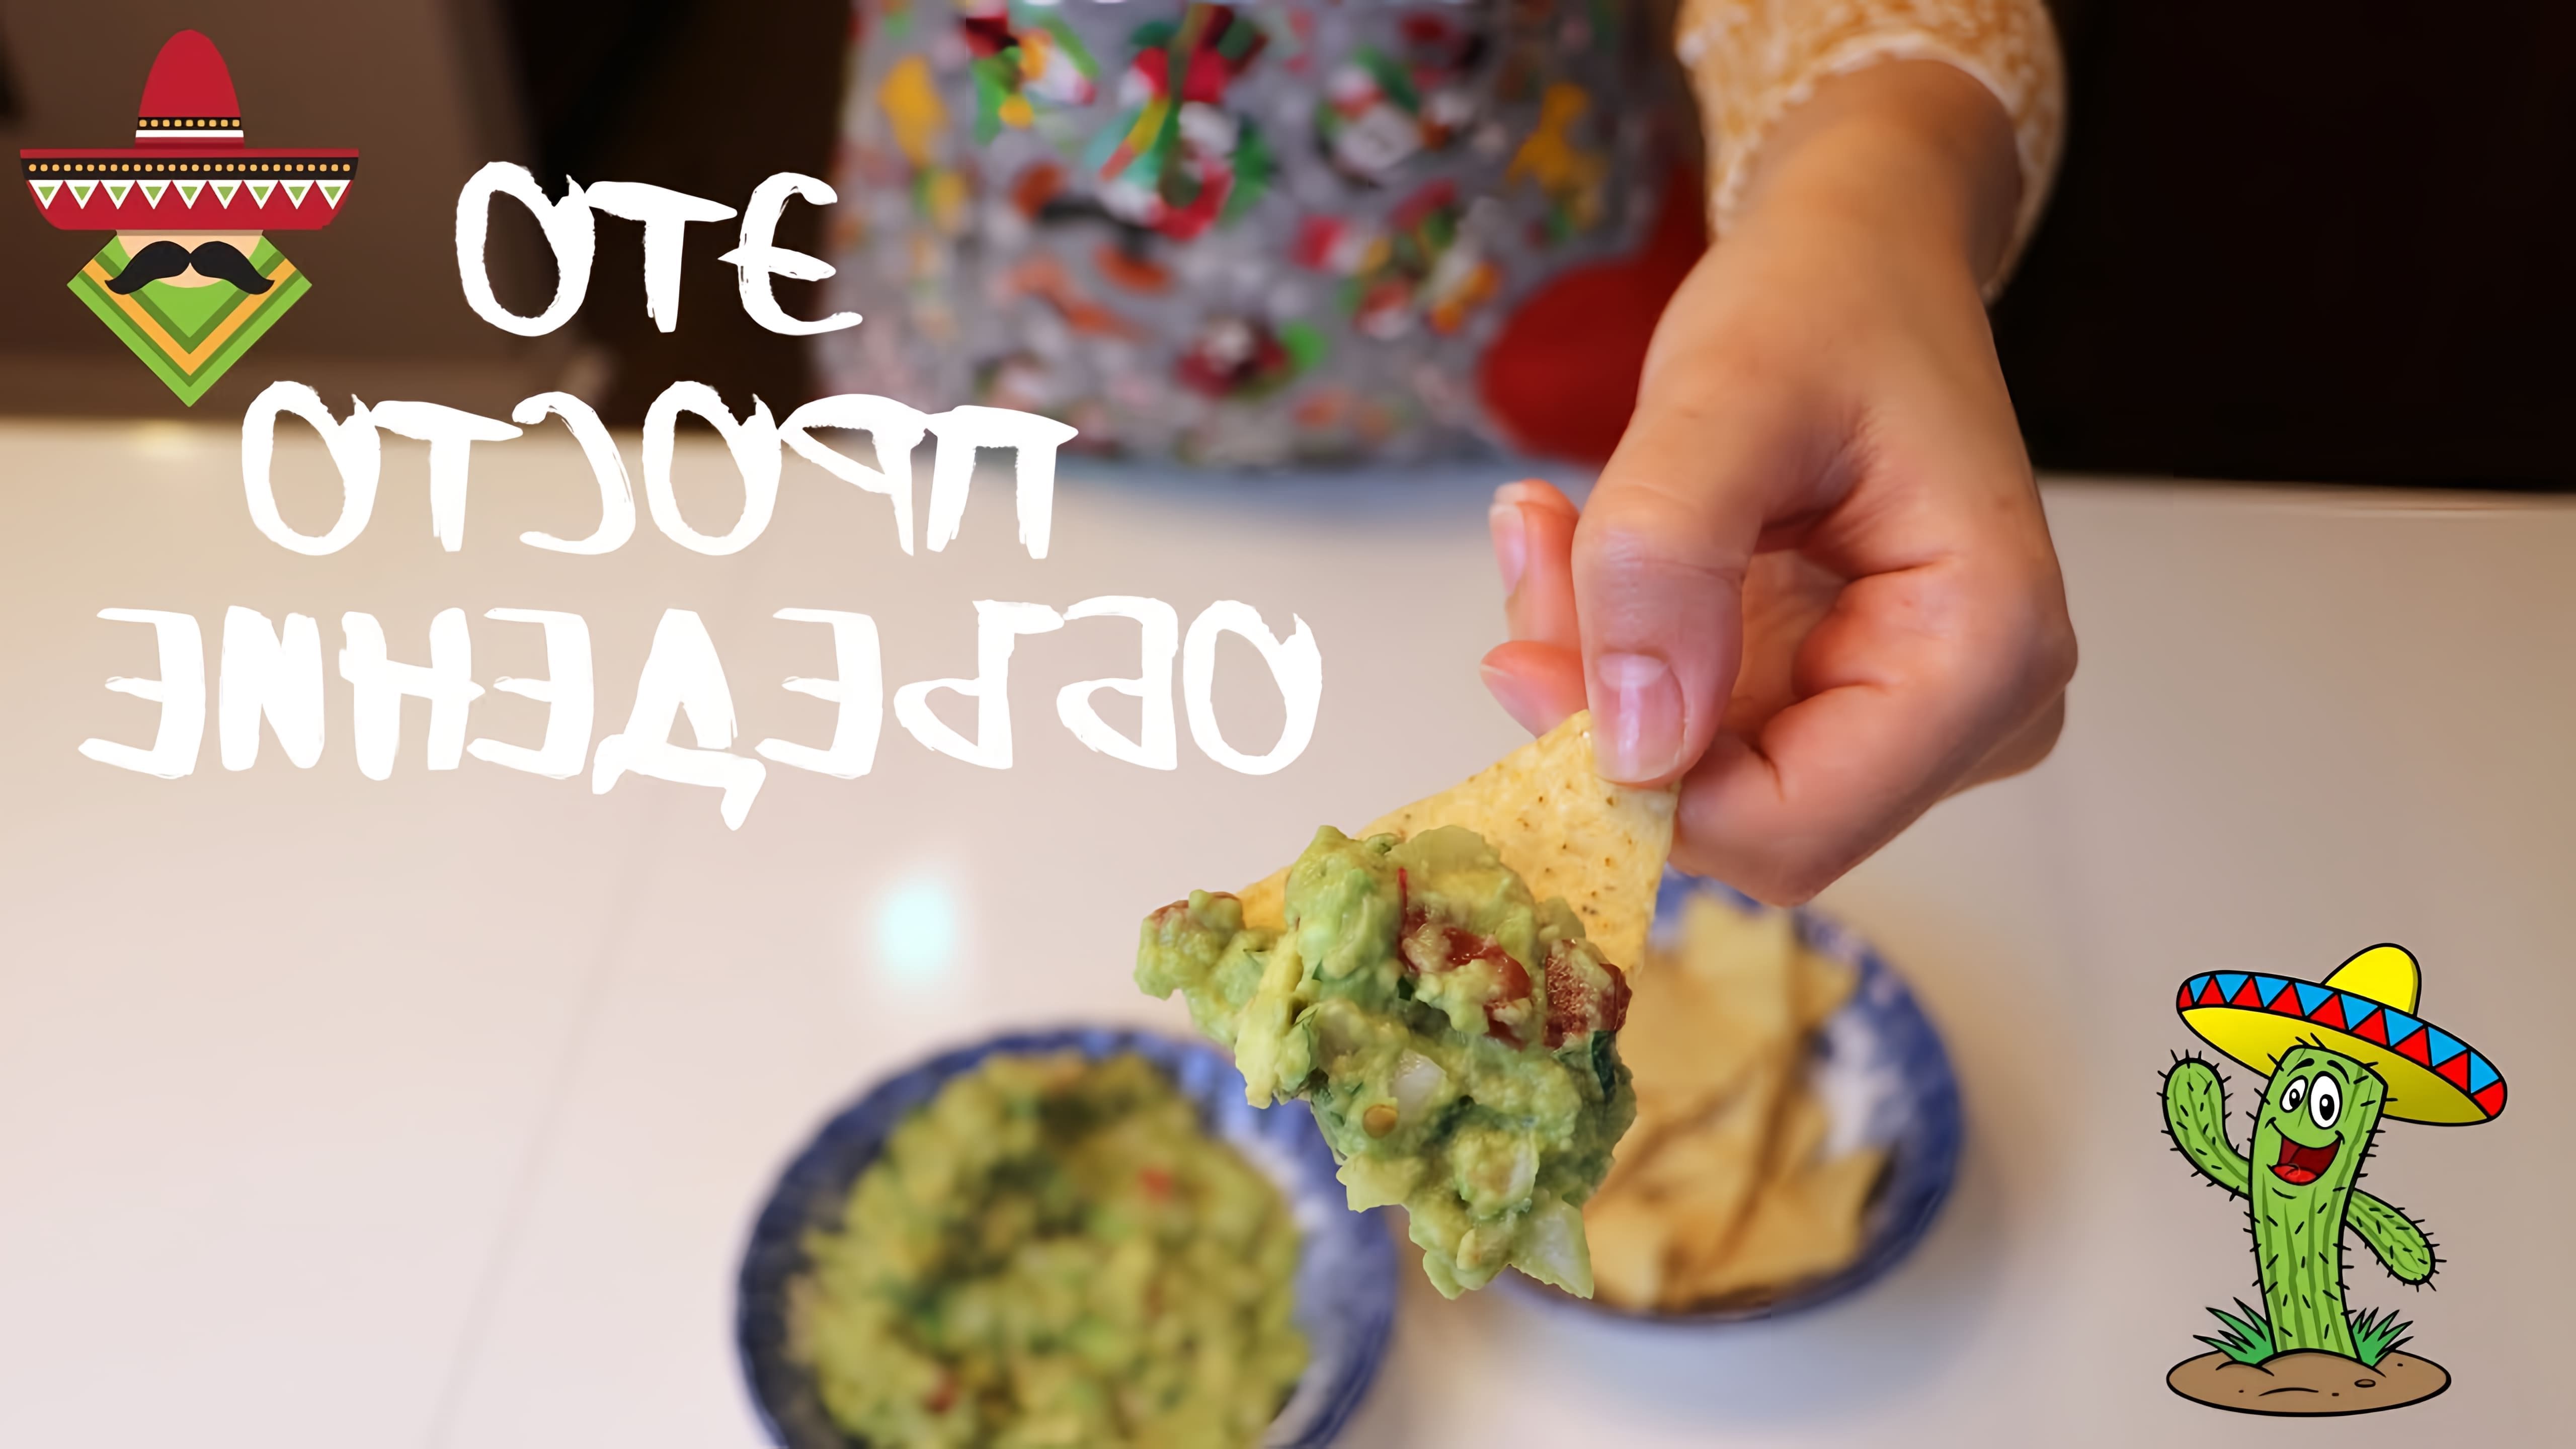 В этом видео демонстрируется процесс приготовления мексиканской закуски гуакамоле